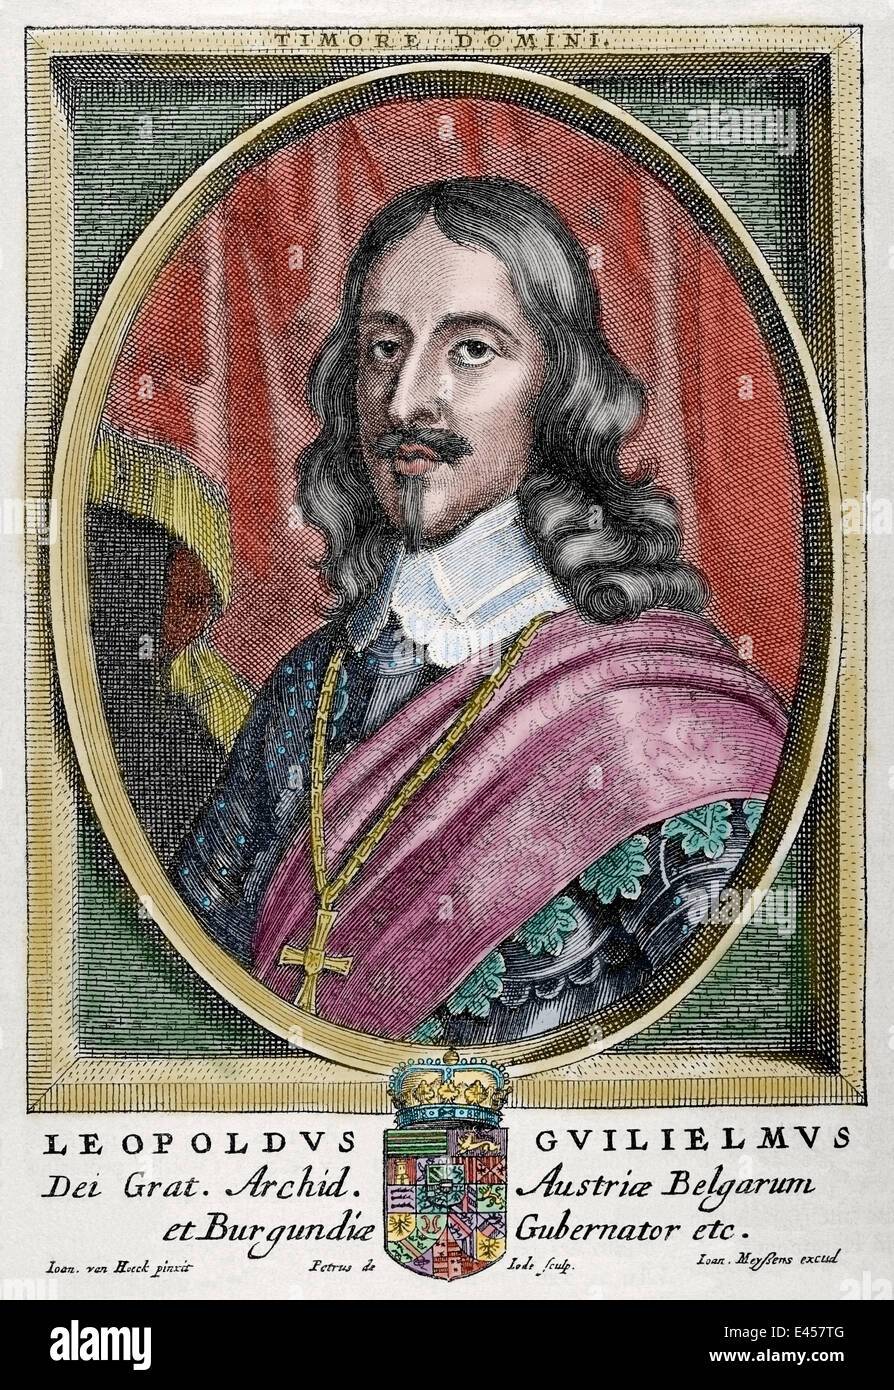 El archiduque Leopoldo Guillermo de Austria (1614-1662). Comandante militar austriaca. Retrato. Grabado. Coloreada. Foto de stock